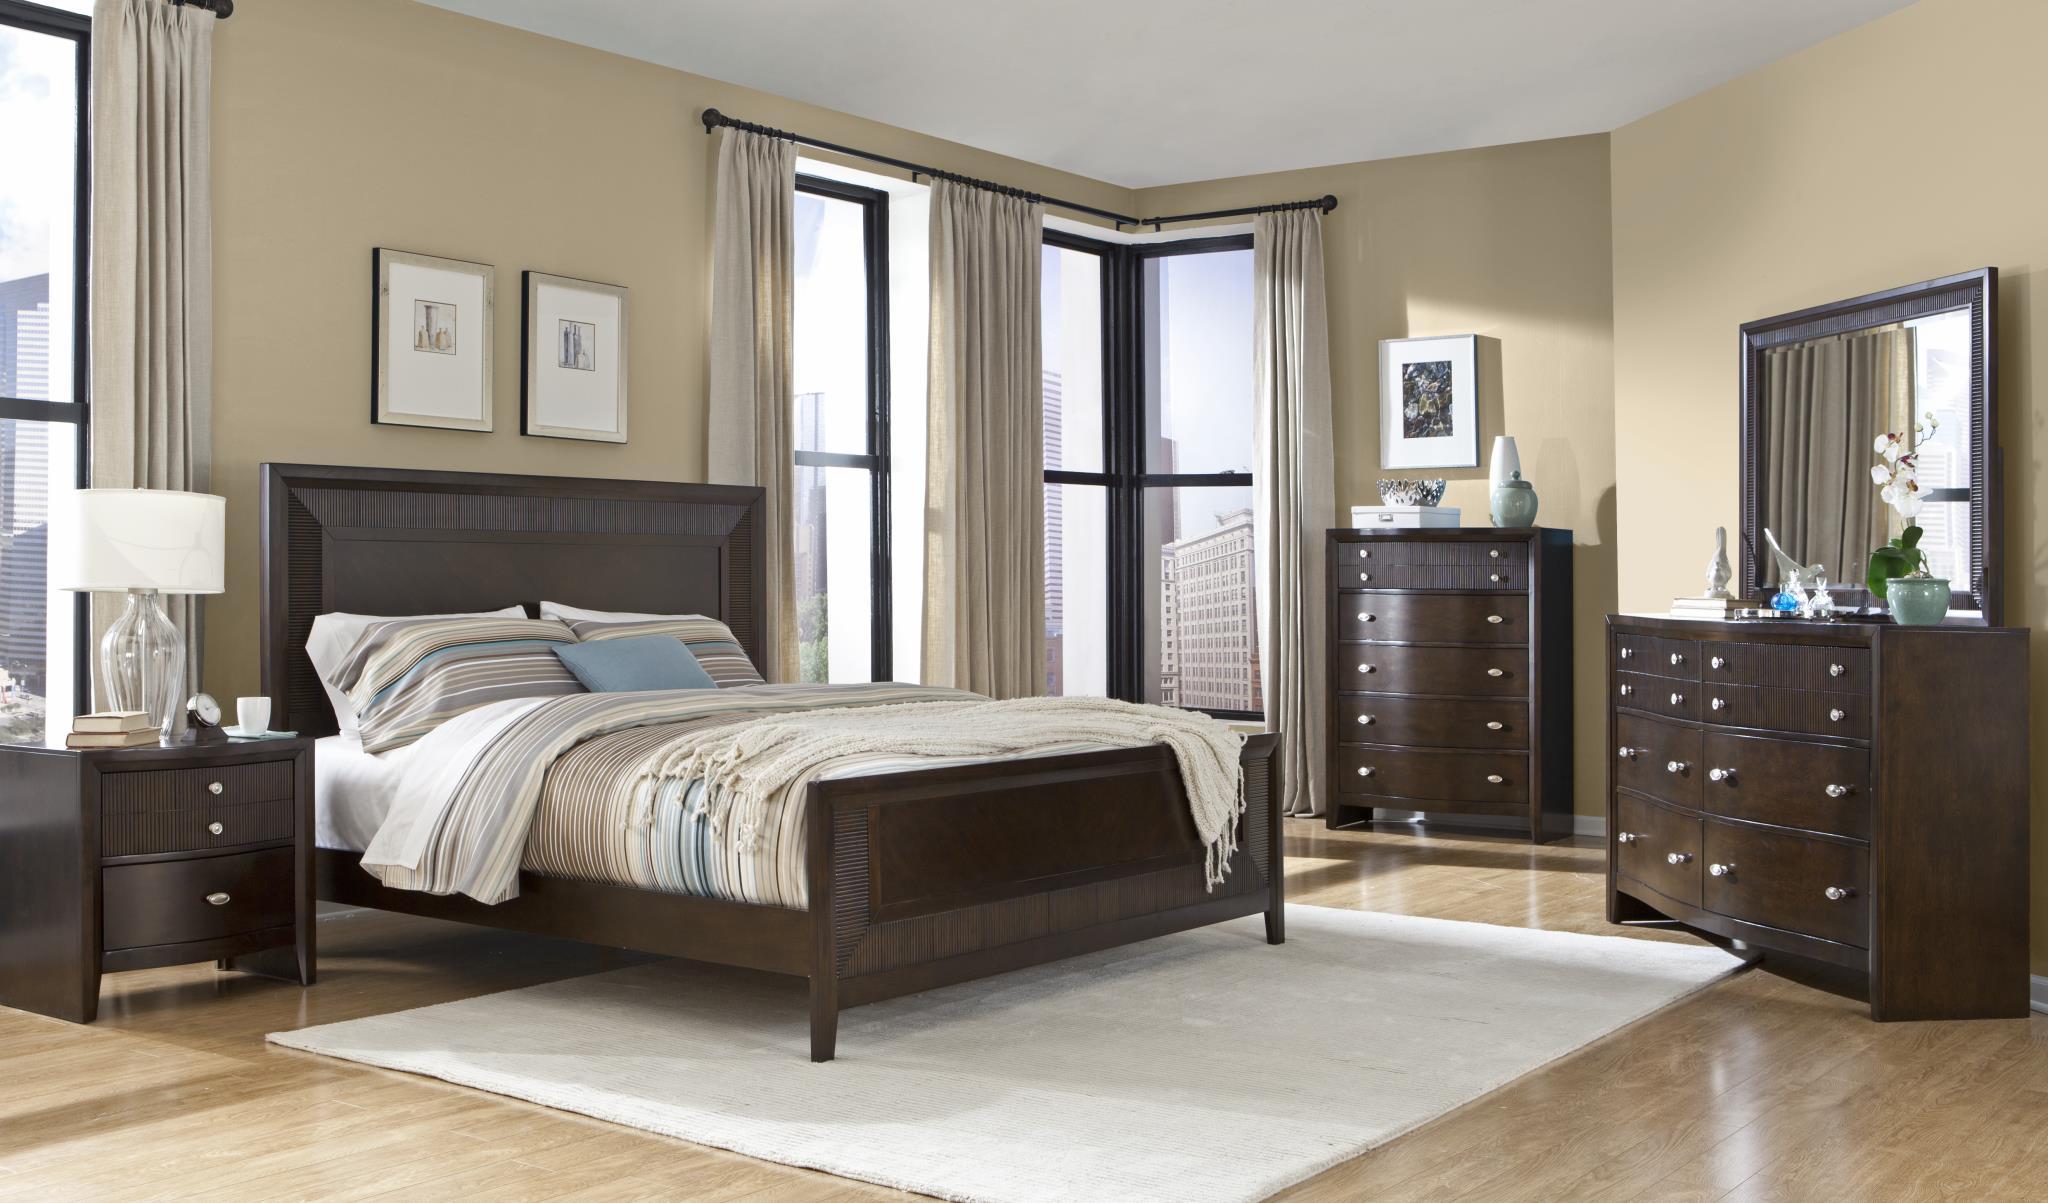 

    
MYCO Furniture EM3110Q Empire Espresso Finish Ribbed Wood Queen Panel Bedroom Set 3Pcs
